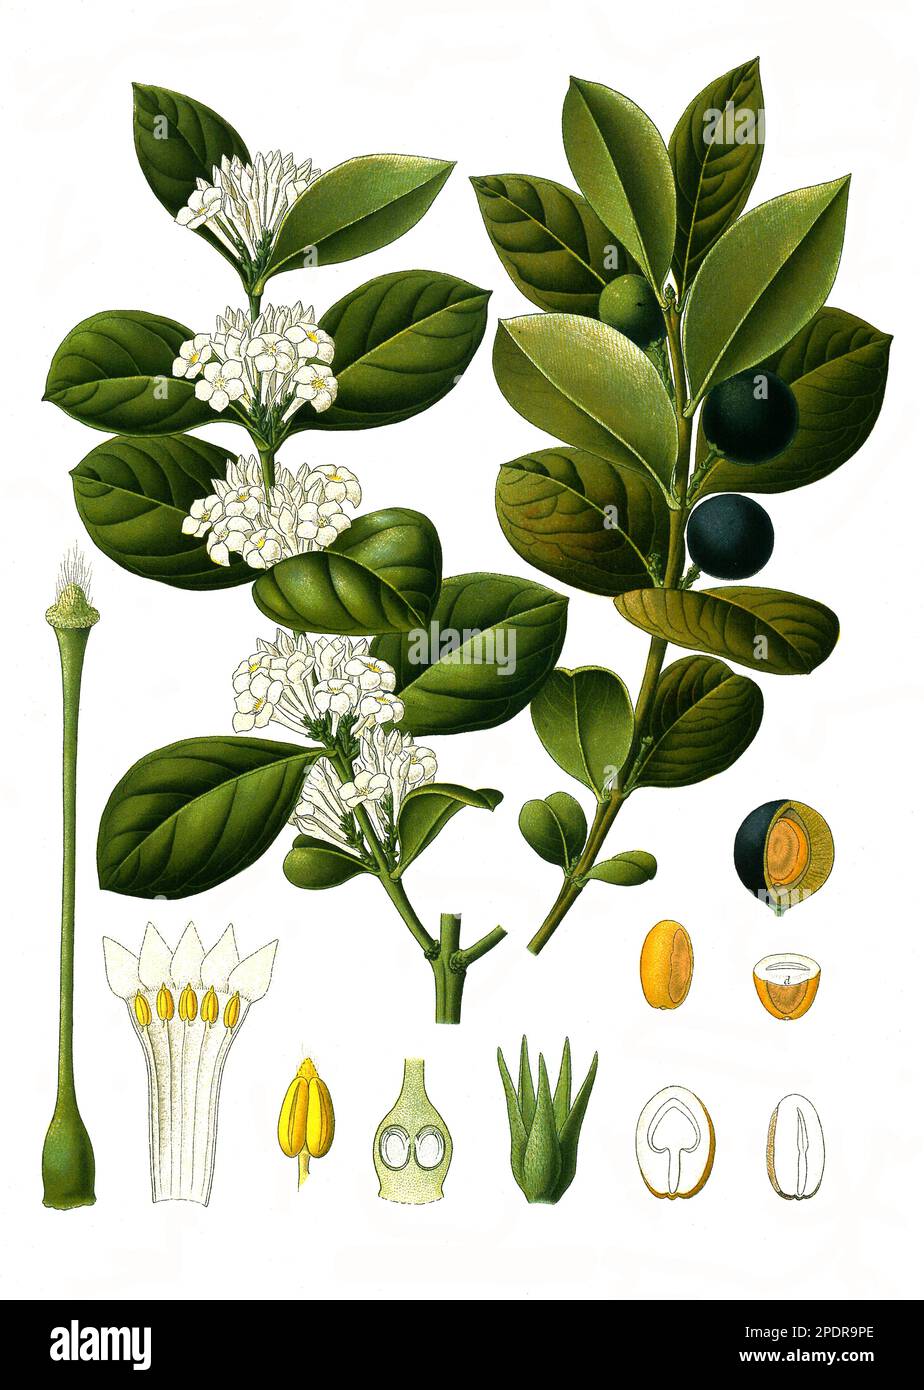 Heilpflanze, Acocanthera abyssinica, Acokanthera sind eine Pflanzengattung innerhalb der Familie der Hundsgiftgewächse, Historisch, digital restaurierte Reproduktion von einer Vorlage aus dem 18. Jahrhundert Stock Photo